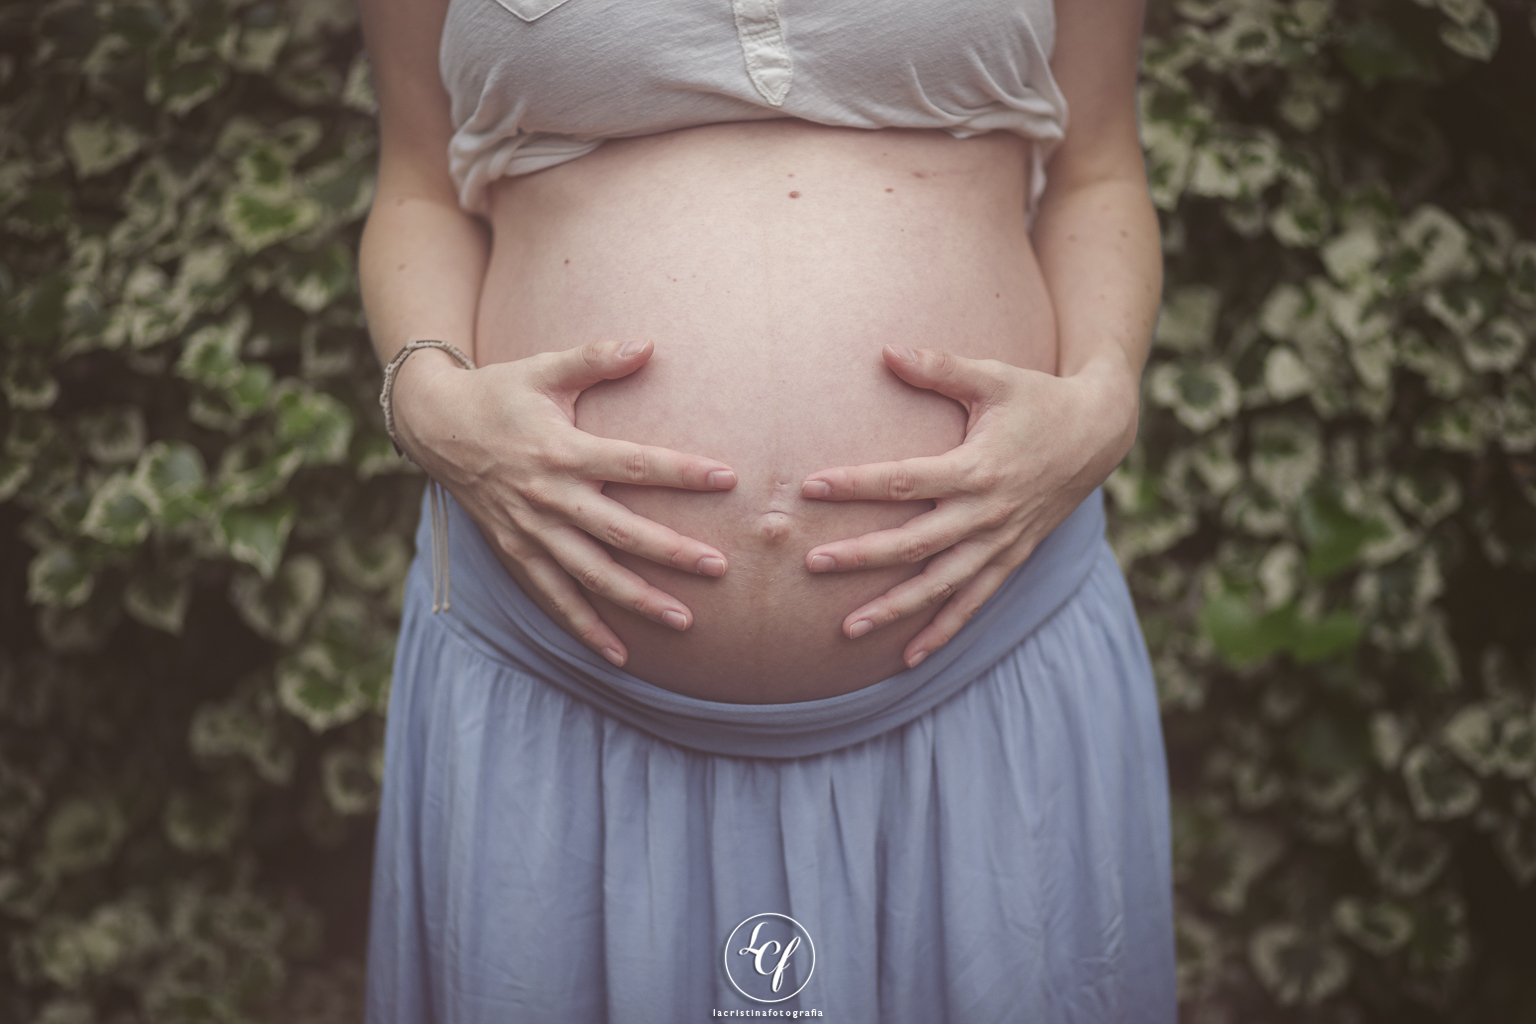 Fotografo embarazado :: Fotografía de embarazada :: Fotógrafa embarazo